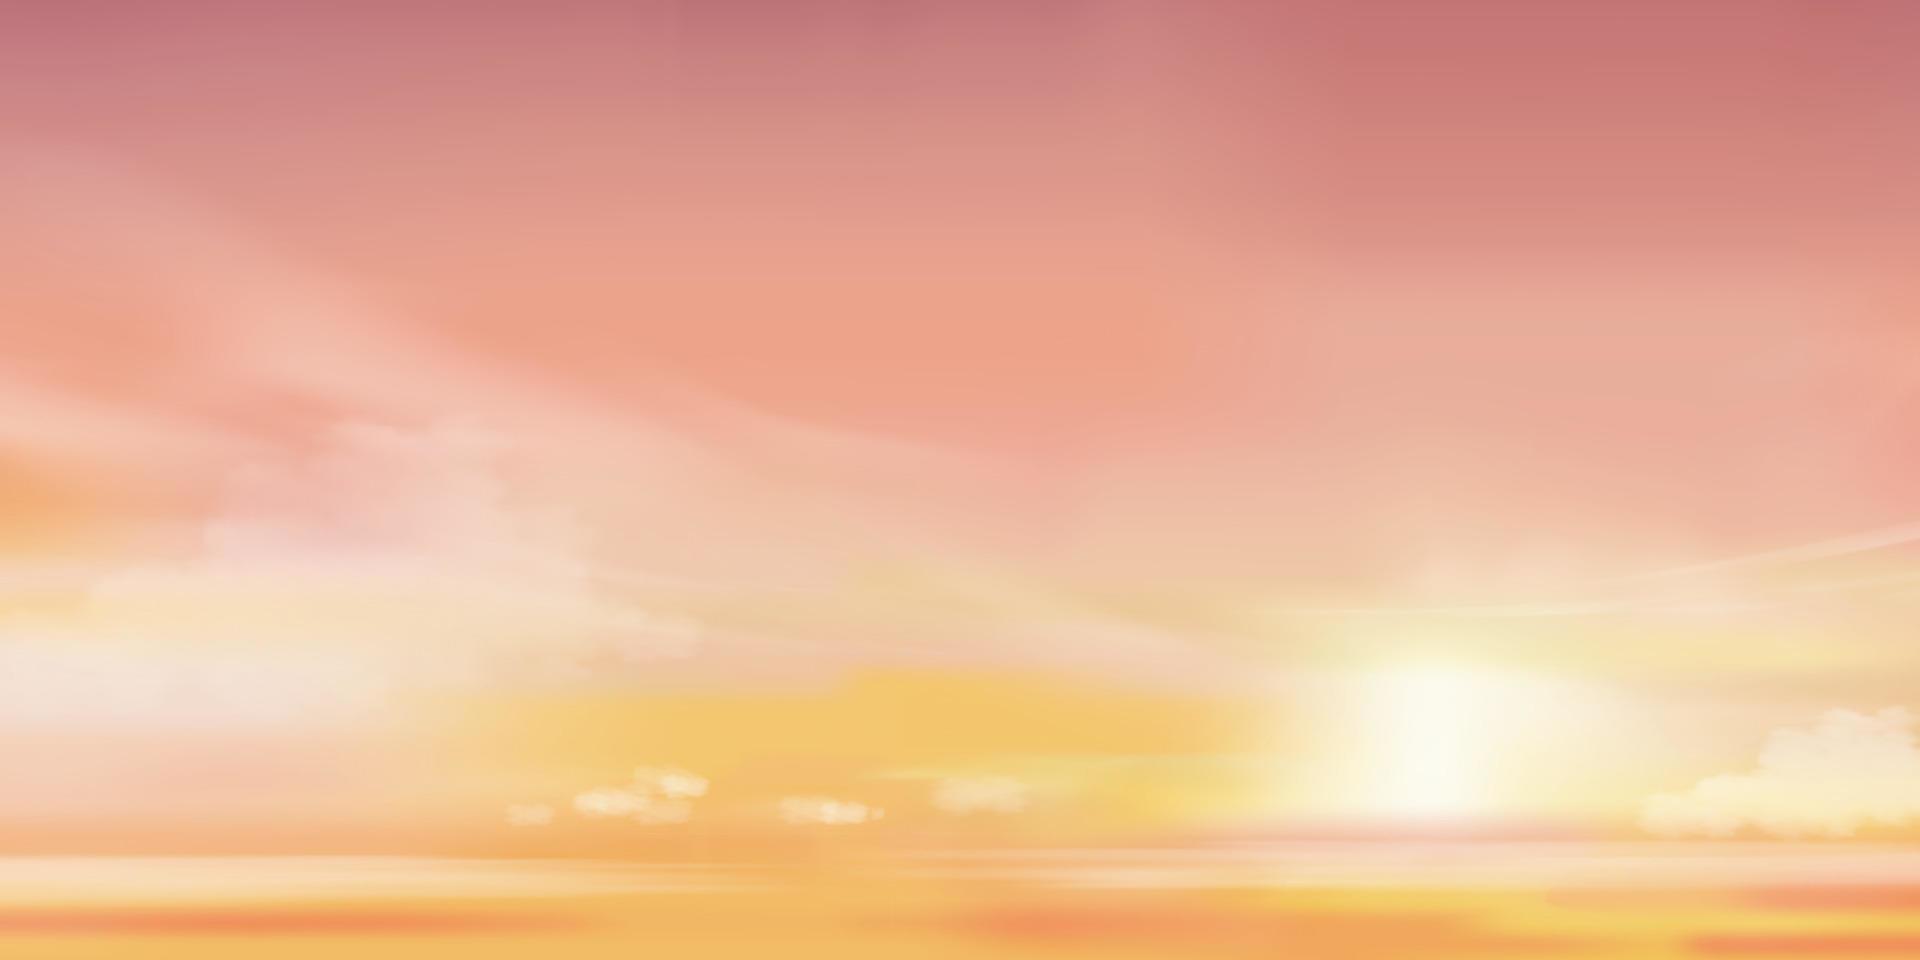 fondo del cielo de puesta de sol, amanecer en la mañana con color naranja, amarillo, rosa, hermoso paisaje crepuscular dramático de la hora dorada en la noche, cielo de atardecer romántico vectorial horizontal con luz solar y nubes vector